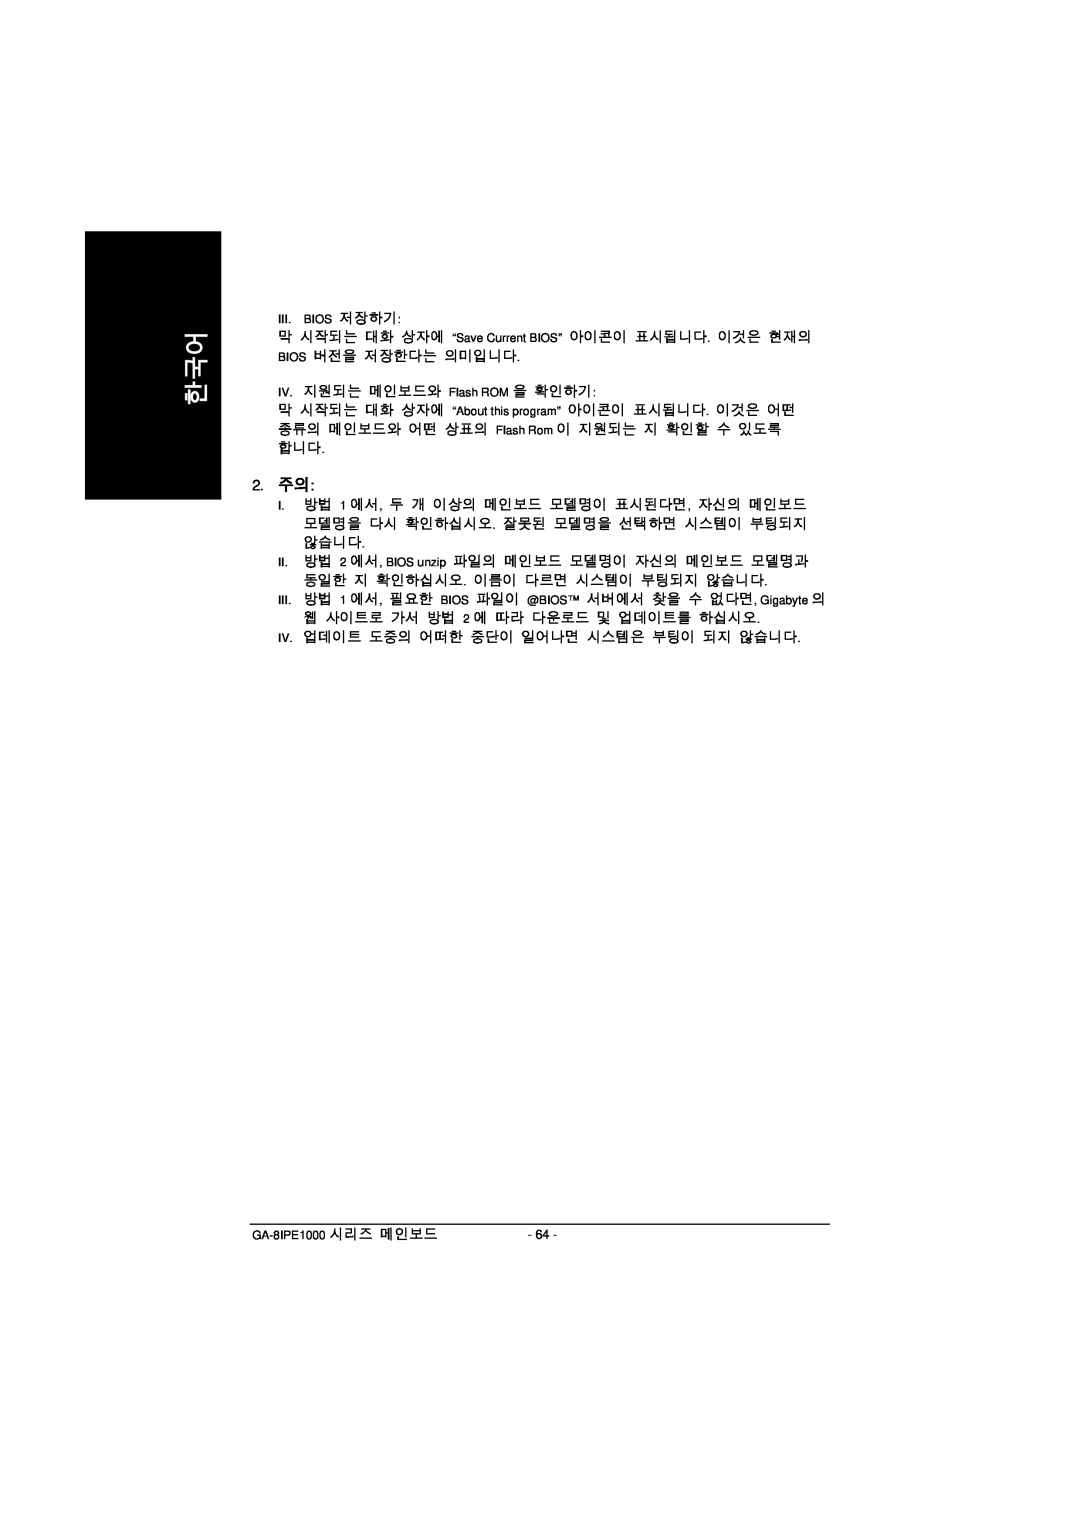 Intel GA-8IPE1000 manual 2. 주의 